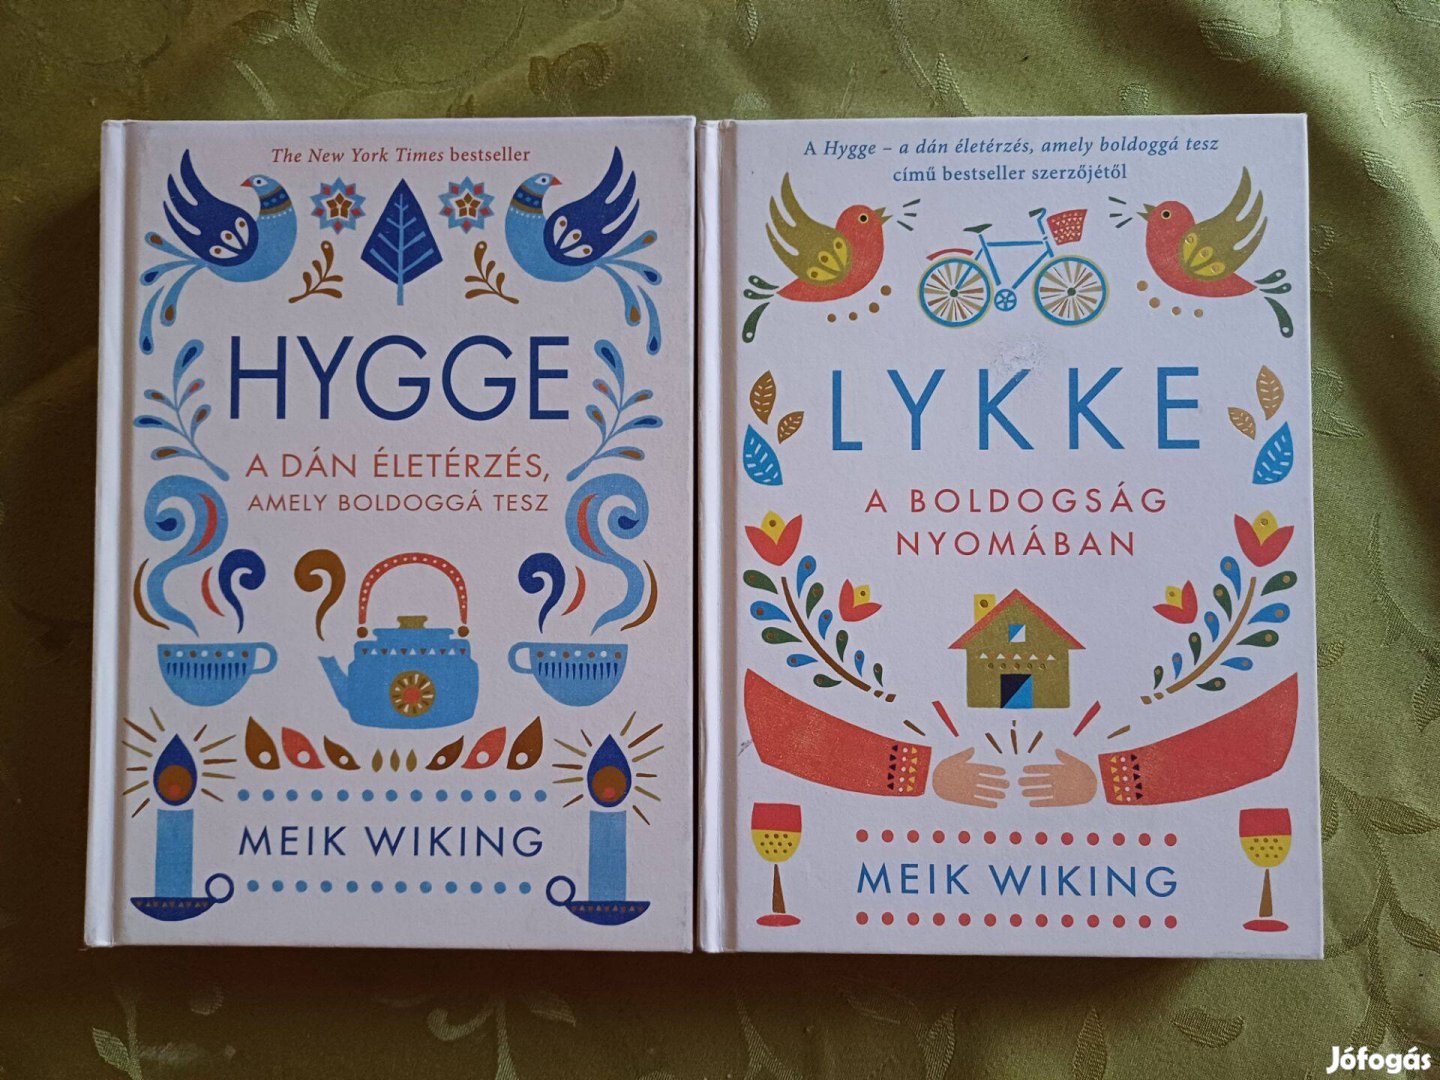 Meik Wiking Hygge és Lykke című könyvei